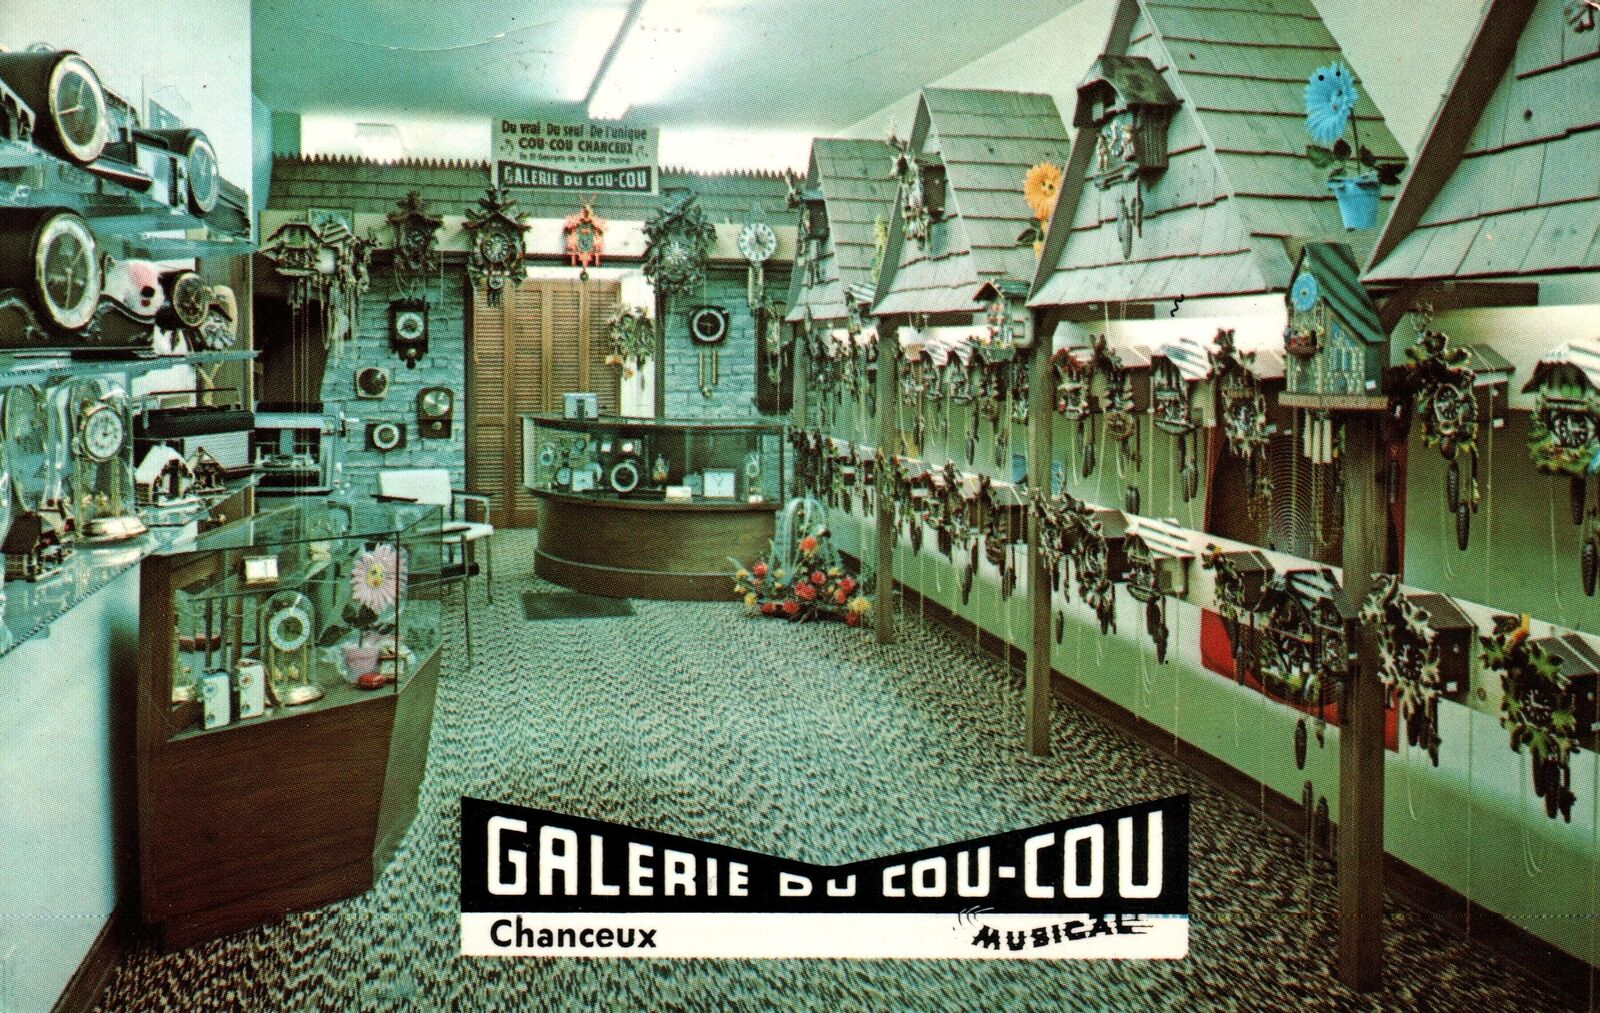 VINTAGE POSTCARD GALERIE DU COU-COU COOCOO CLOCKS & CHIMERS MONTREAL QUEBEC 1970